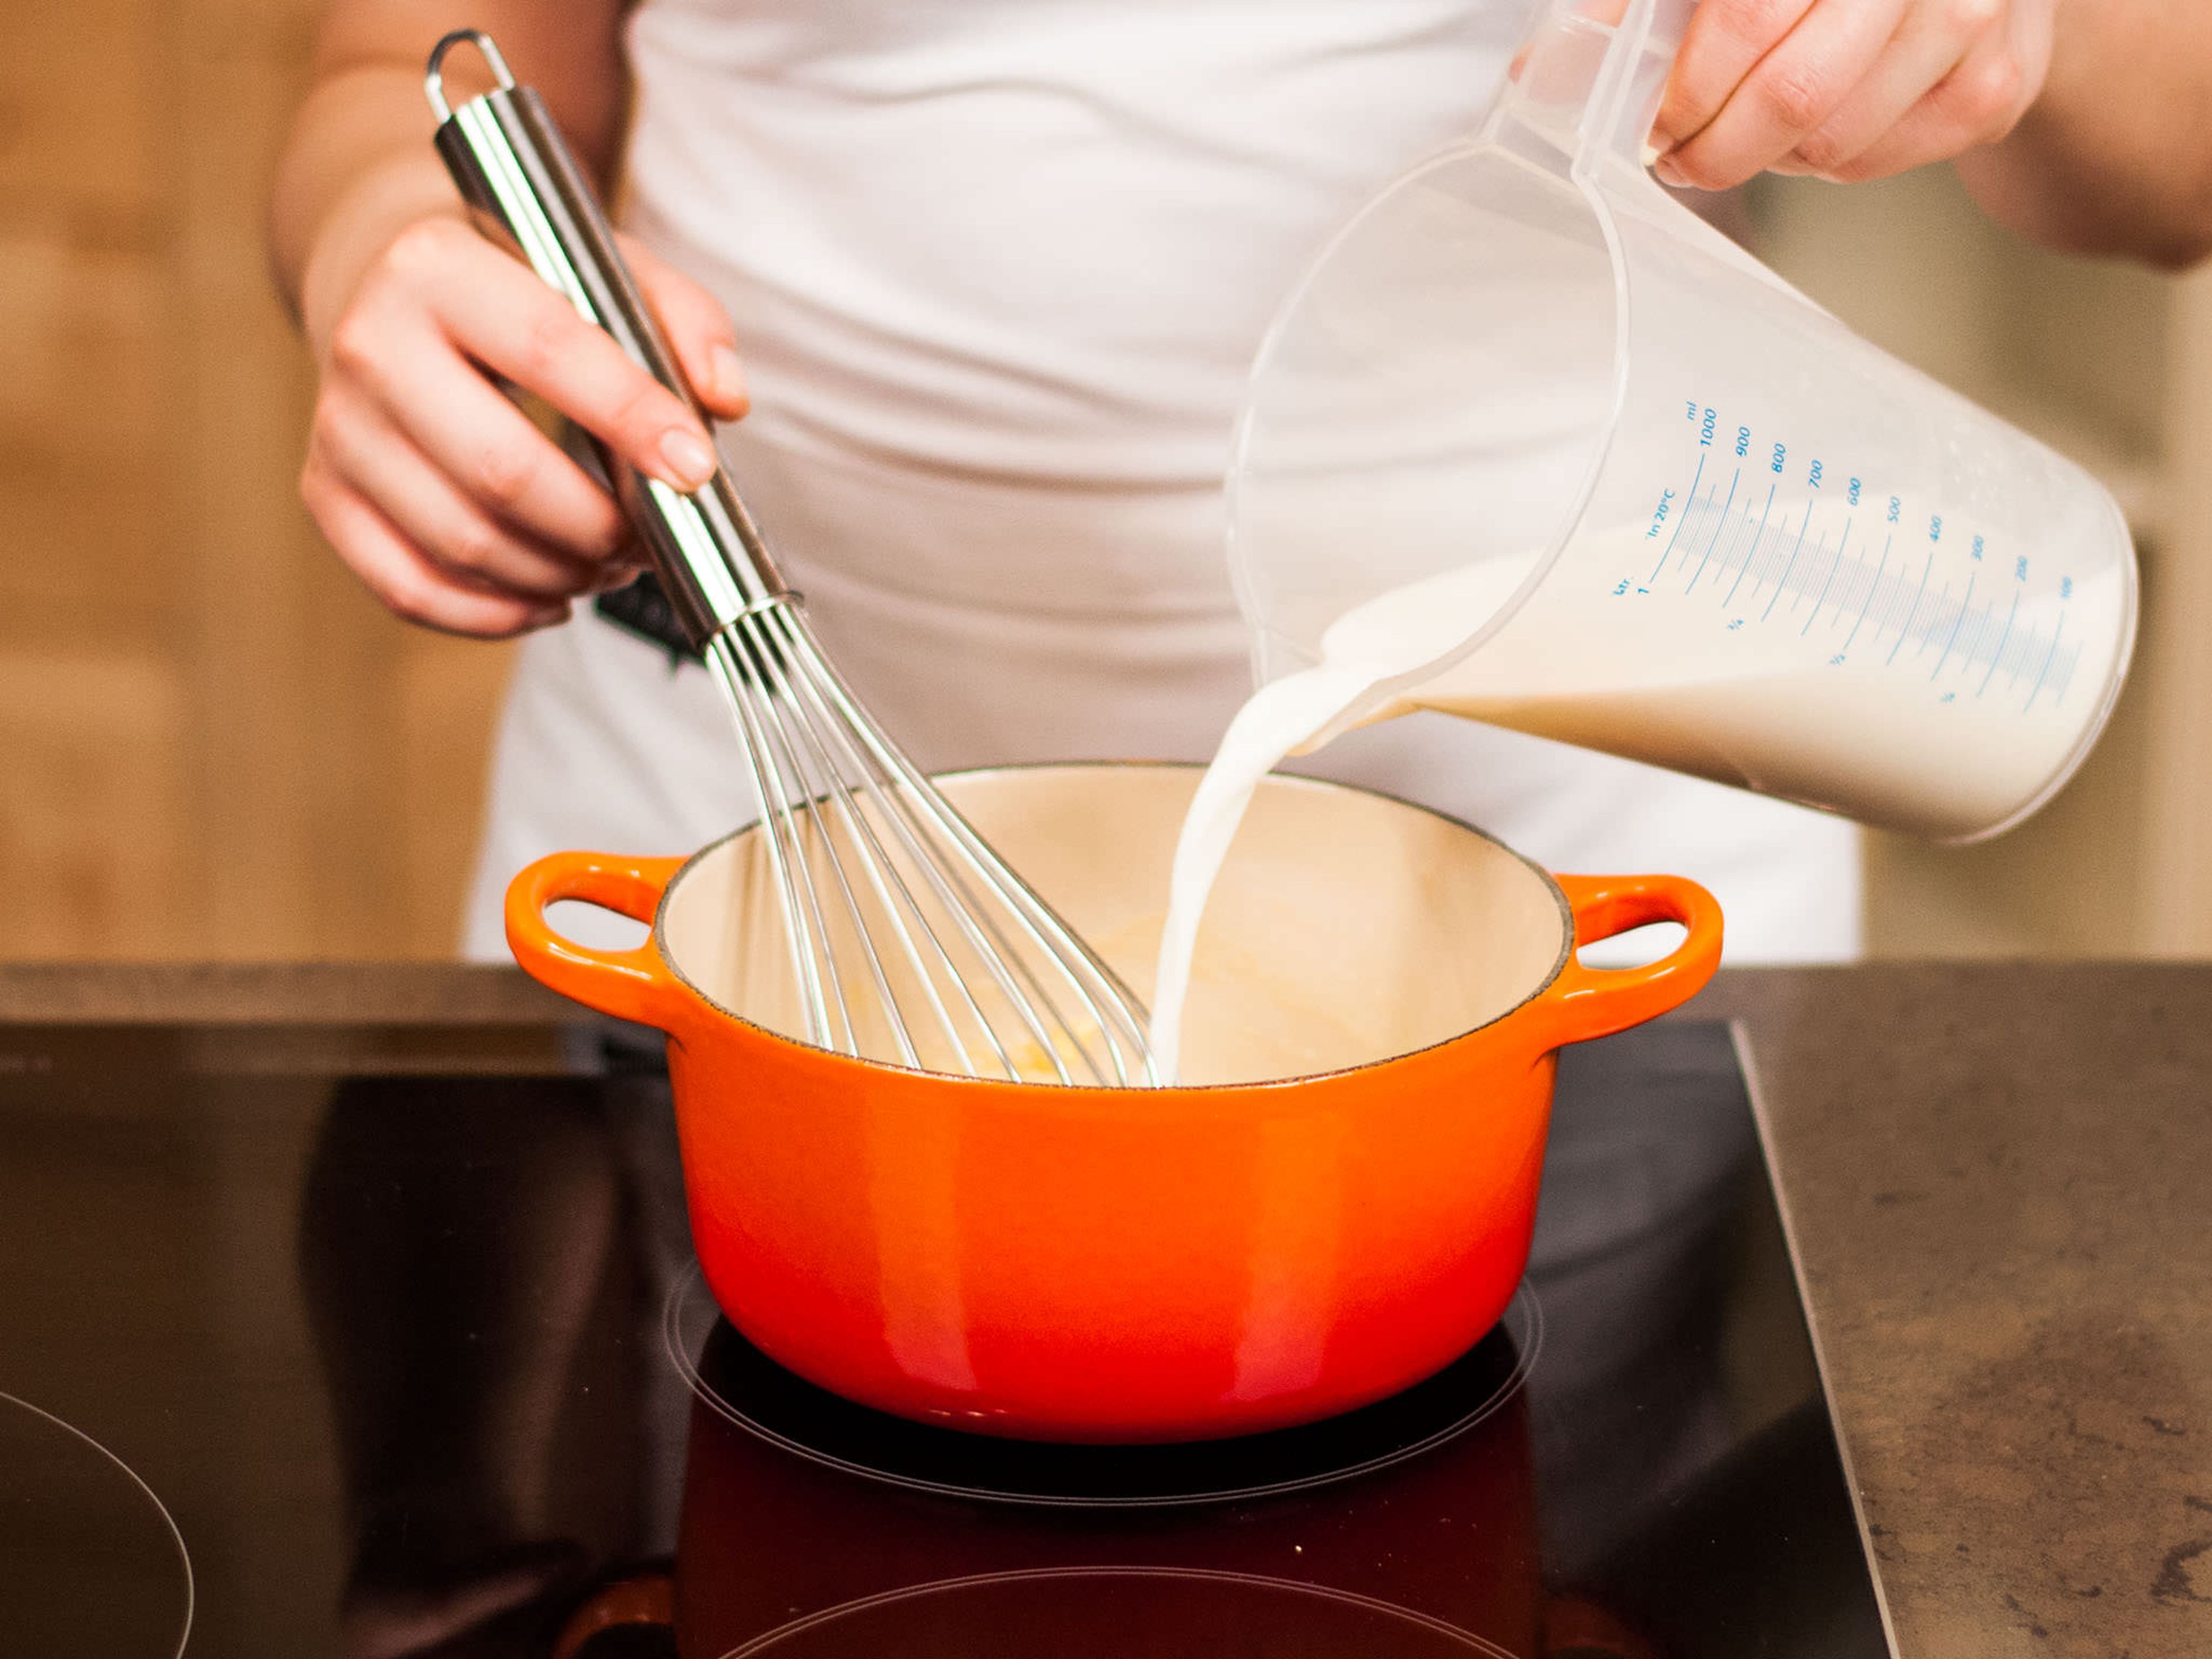 In einem Topf Butter schmelzen, Mehl hinzugeben und gut umrühren, bis sich das Mehl vollständig mit der Butter verbunden hat. Anschließend unter stetigem Rühren mit Milch auffüllen und kräftig mit Muskatnuss, Salz und Pfeffer würzen.